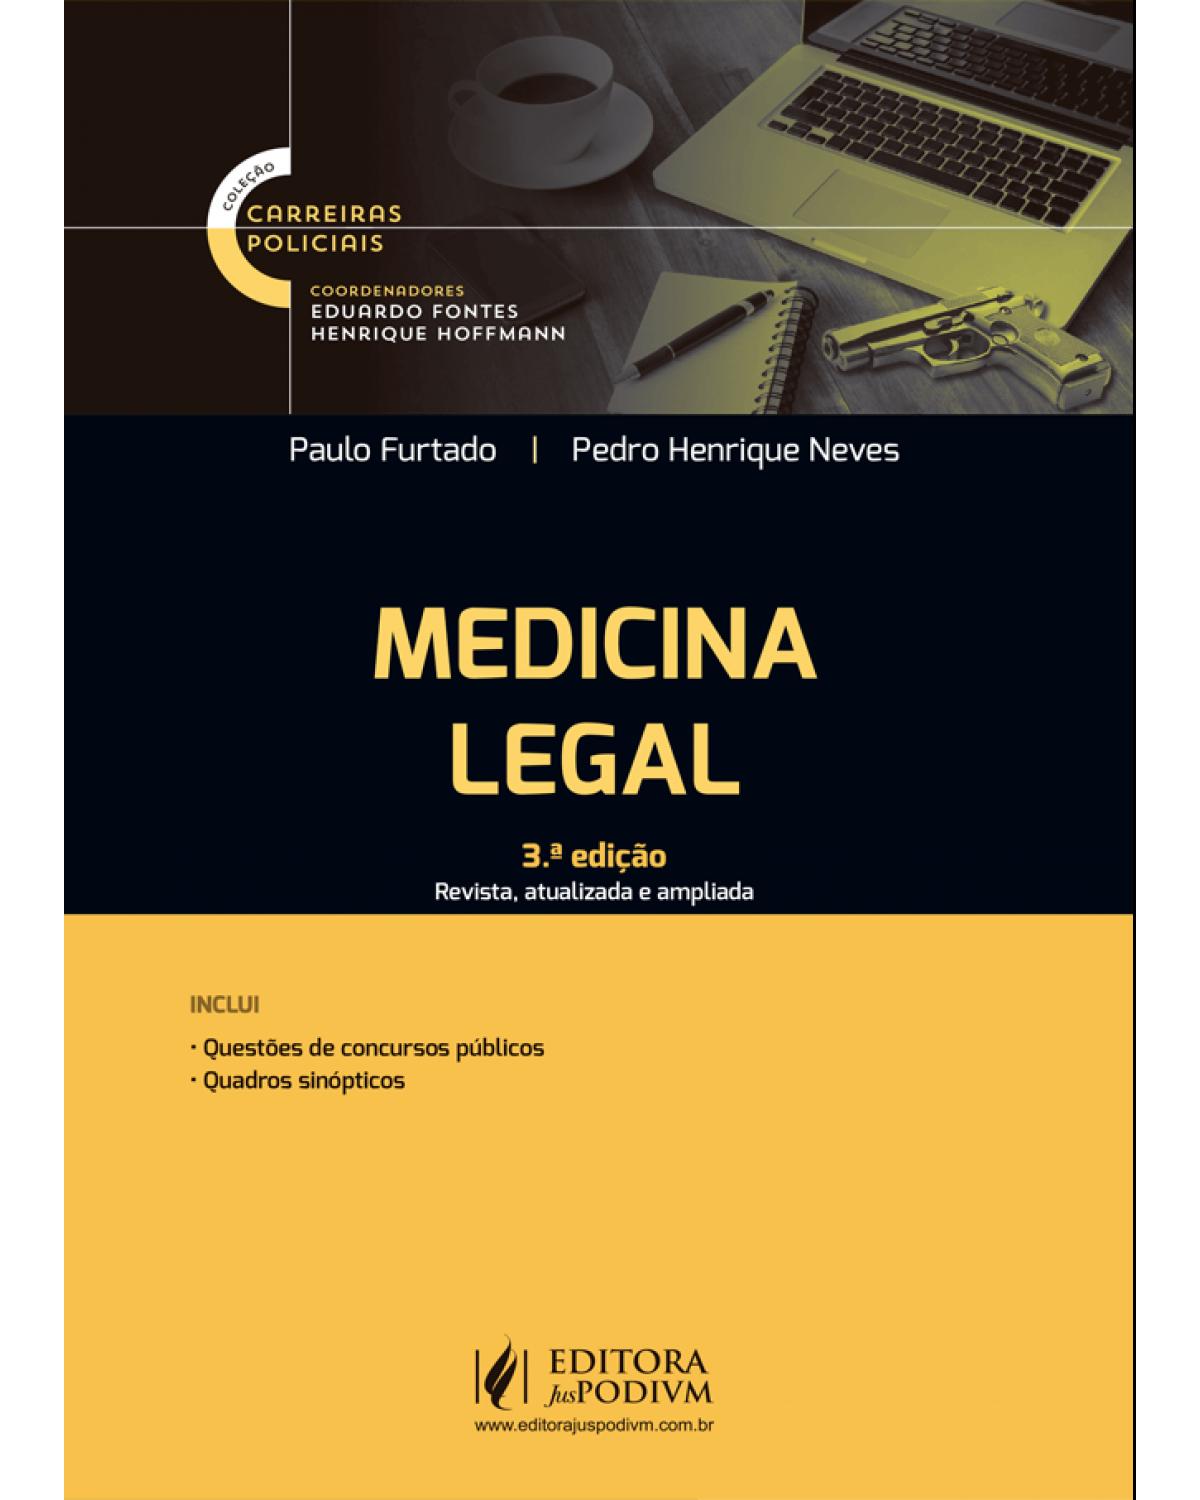 Carreiras policiais - Medicina legal - 3ª Edição | 2021